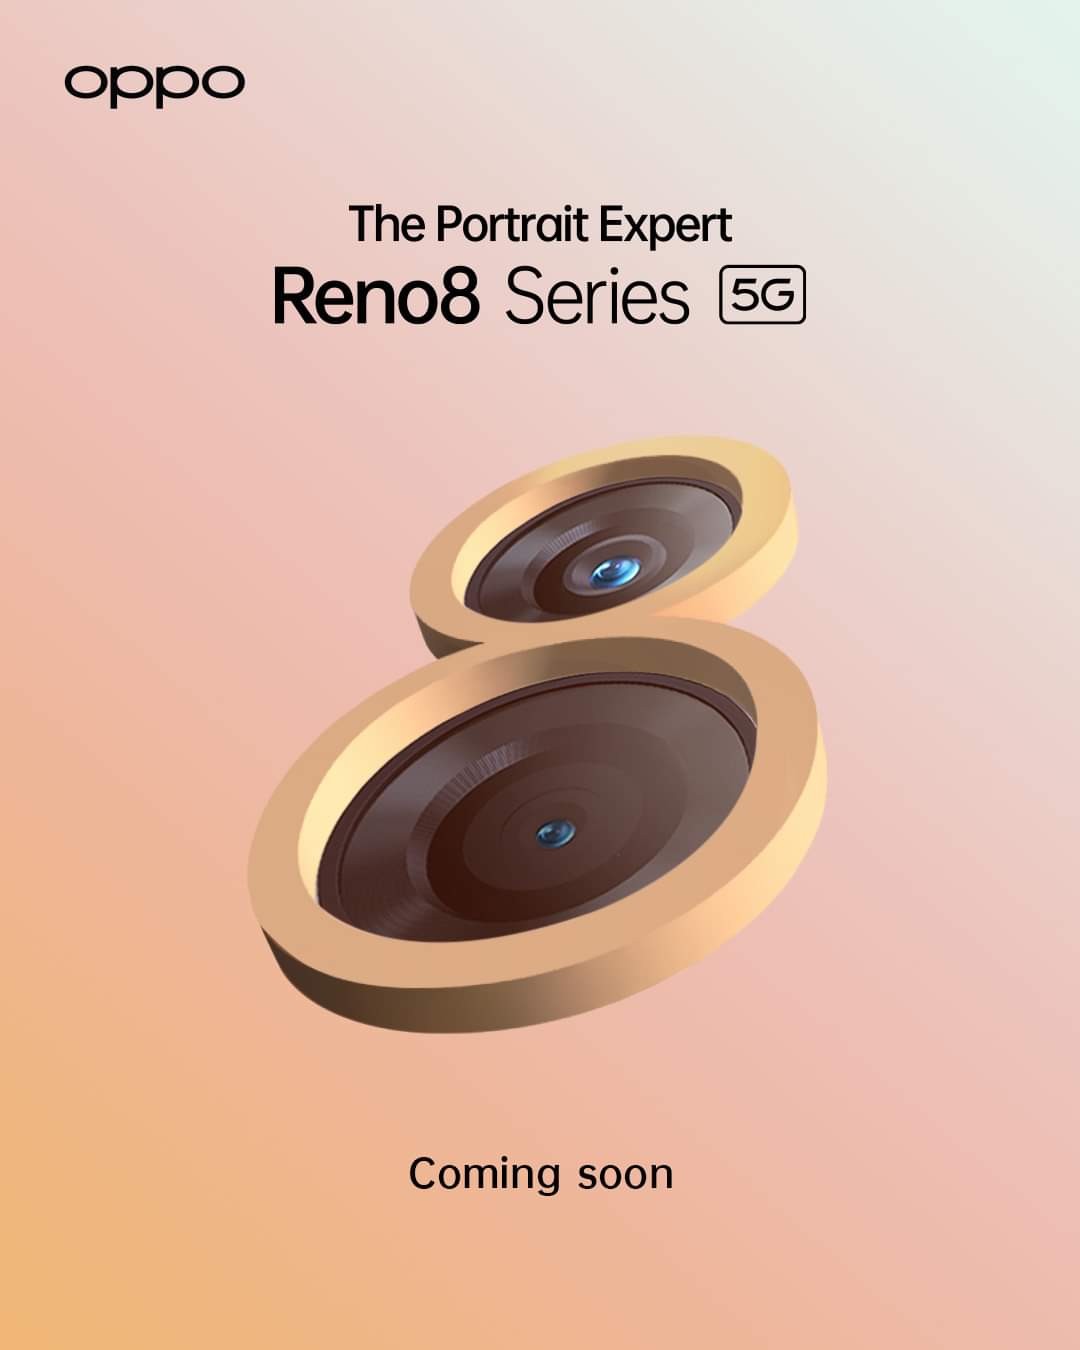 ออปโป้ เปิดตัว OPPO Reno8 Series 5G พร้อมครองตำแหน่งซีรี่ส์สมาร์ตโฟนด้านพอร์ตเทรต คว้า “เบลล่า-กลัฟ” นั่งแท่น The Portrait Expert    